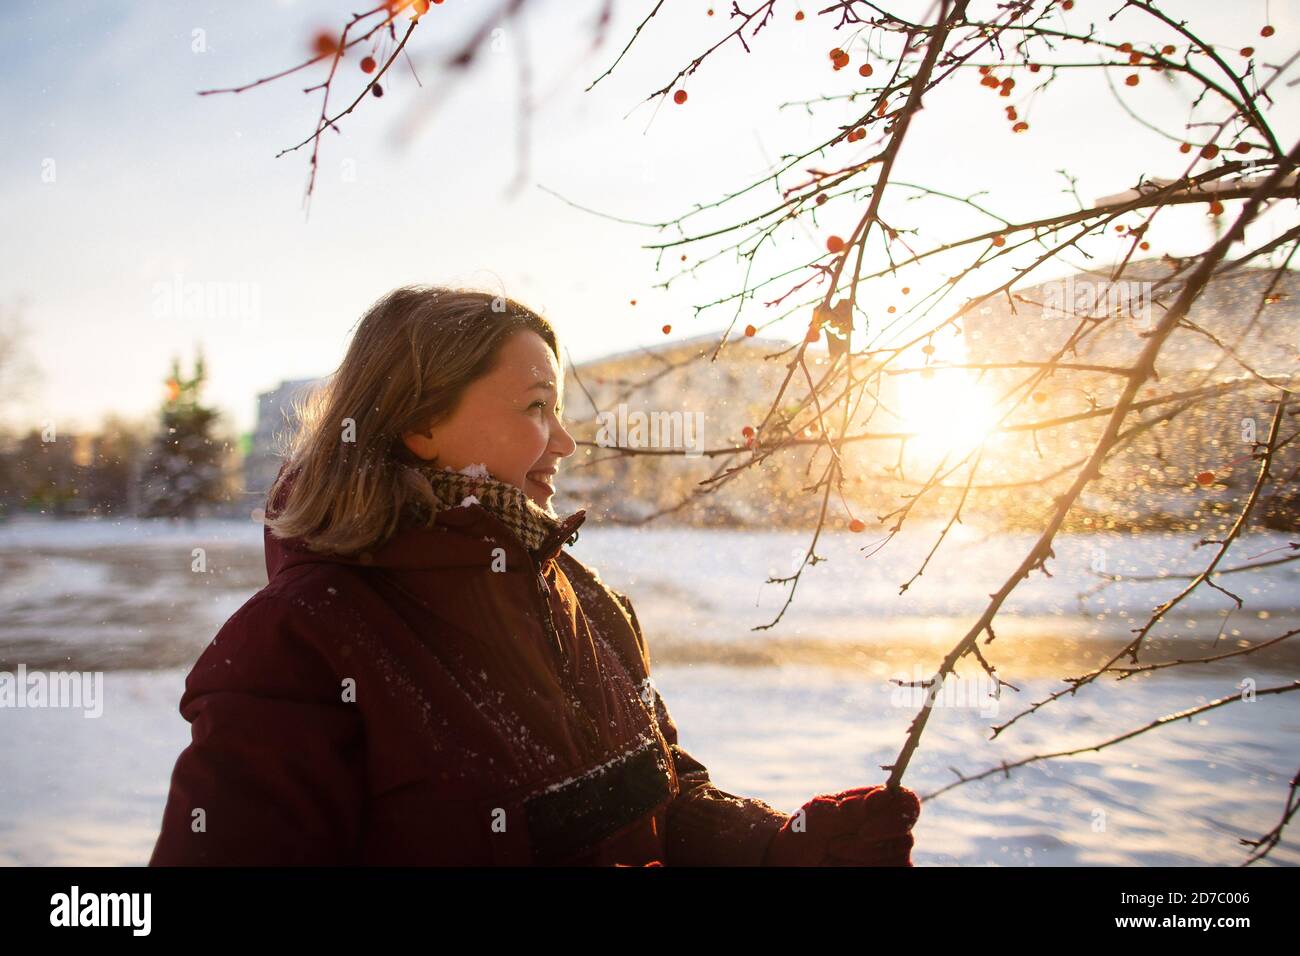 Activités saisonnières en hiver. Belle femme jetant de la neige dans l'air au coucher du soleil en tenant des branches d'arbre. Banque D'Images